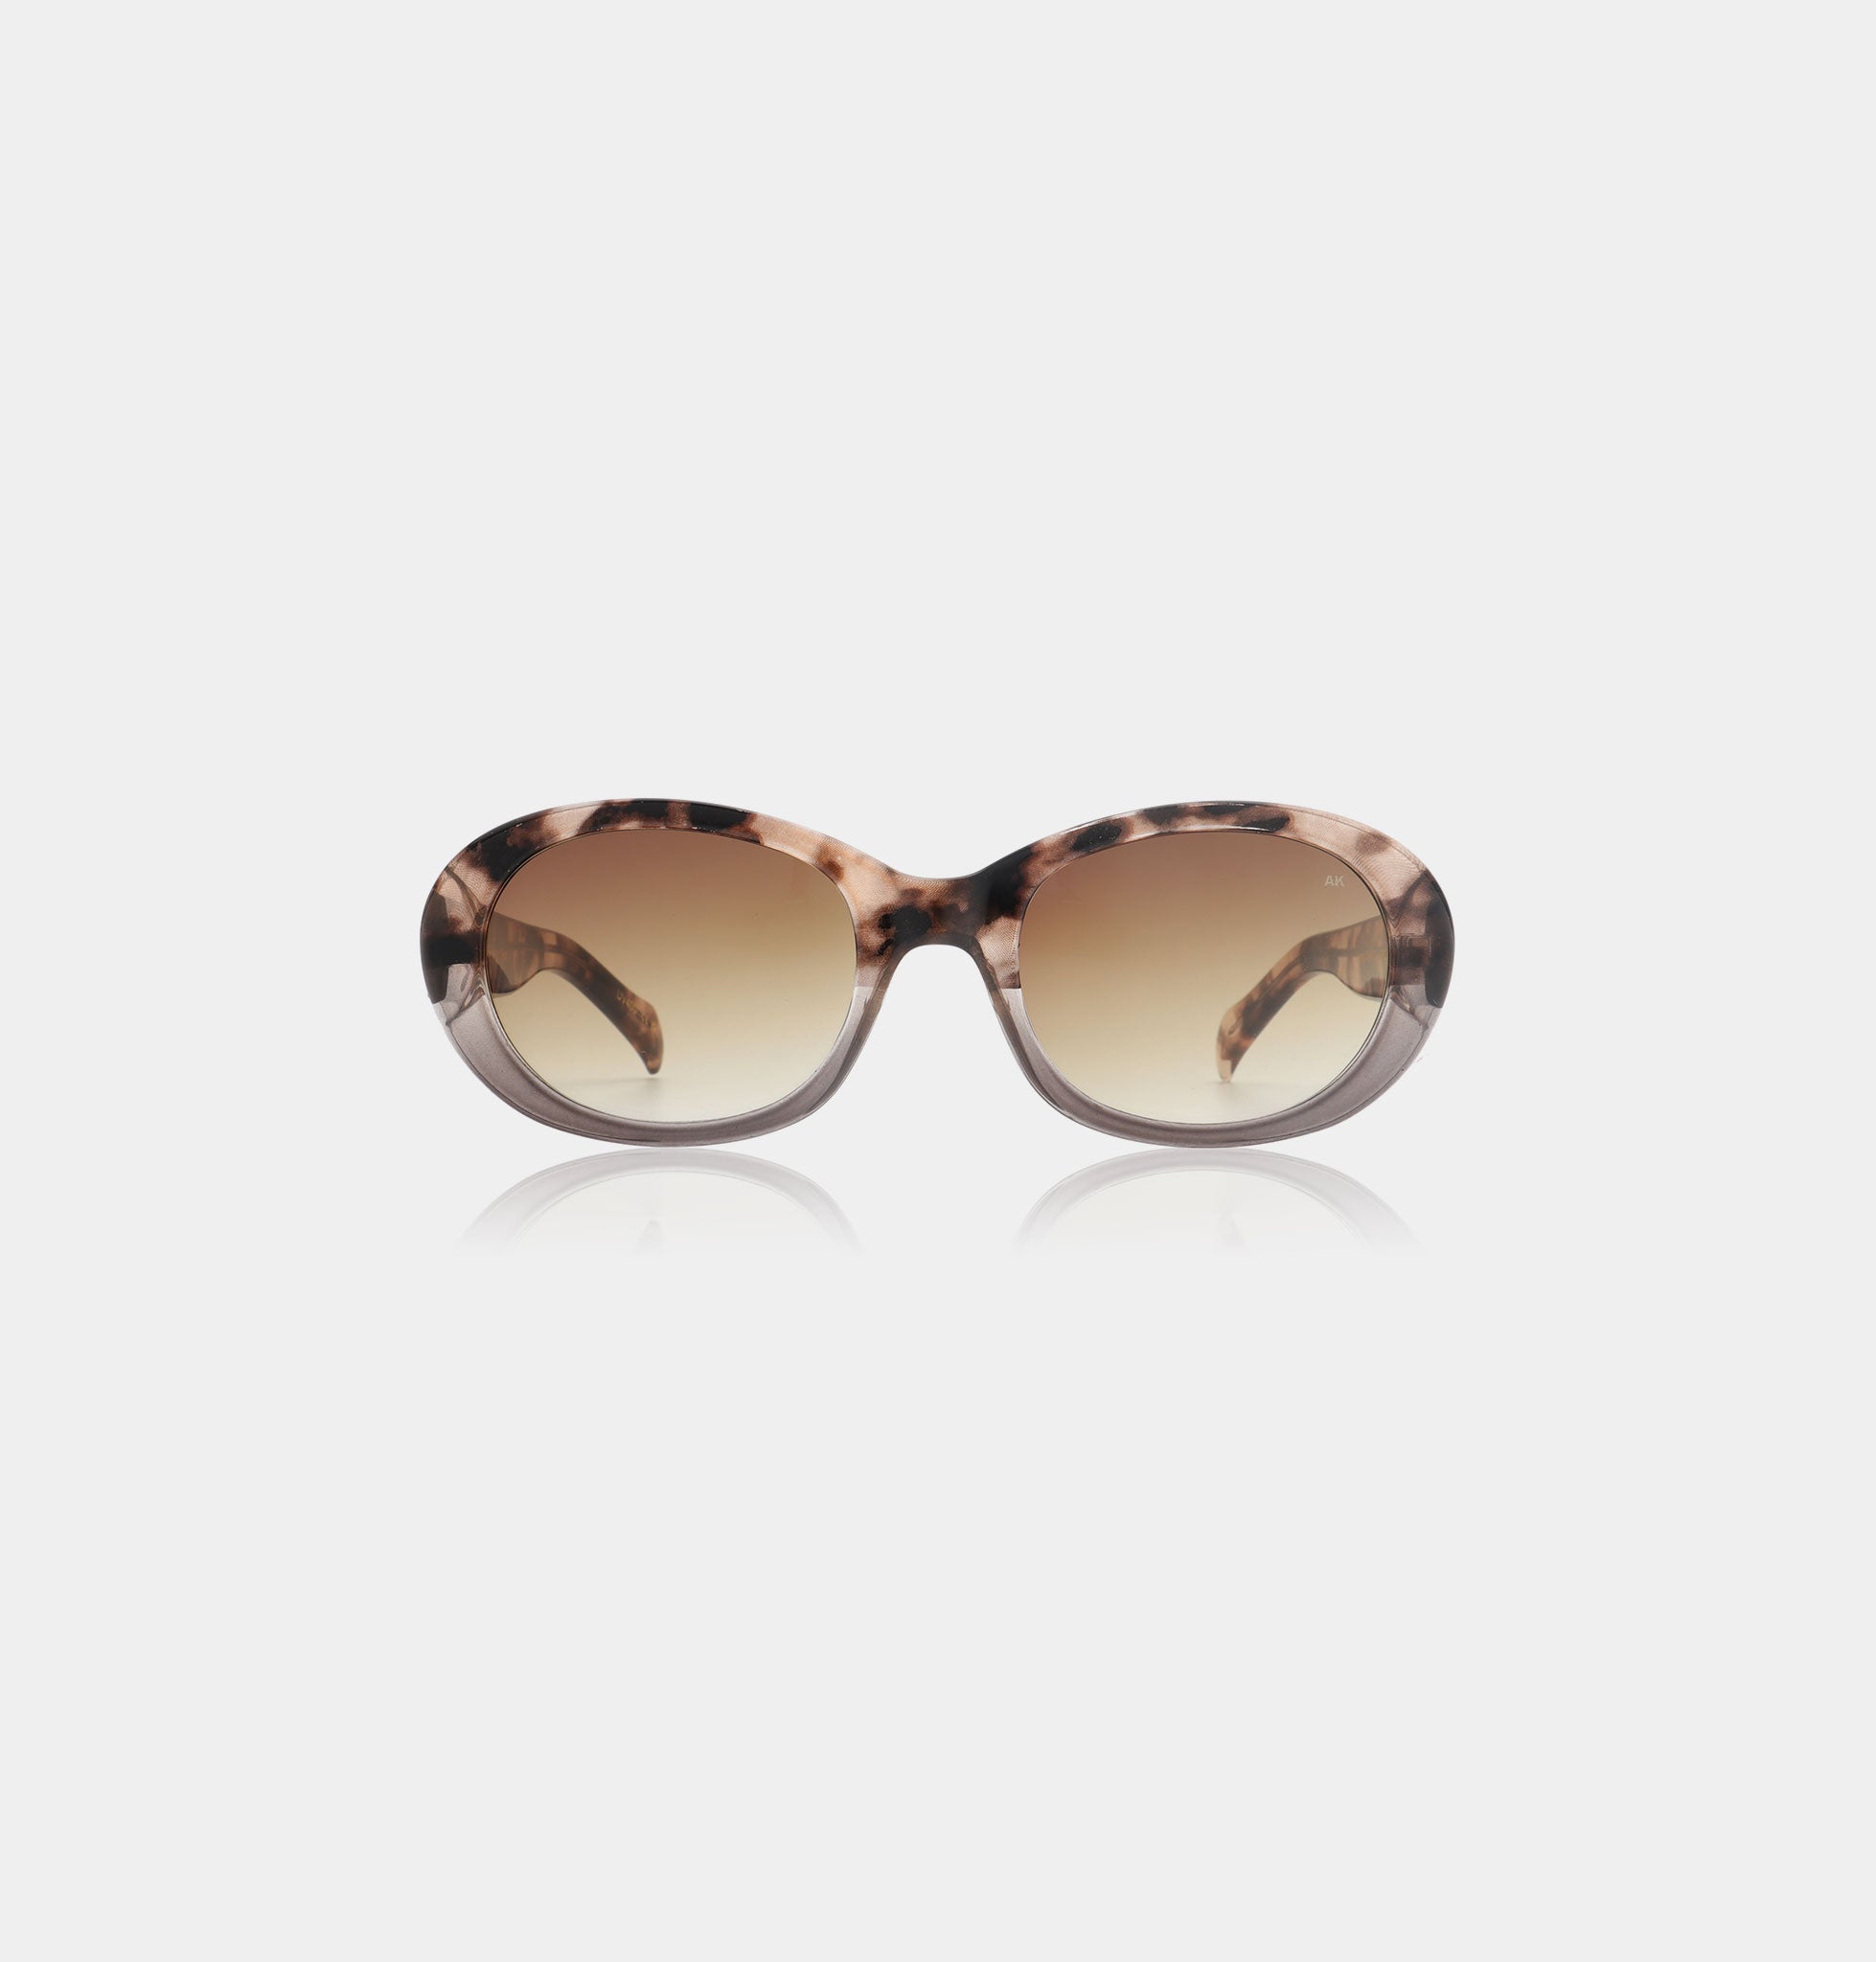 A.Kjaerbede Anma Sunglasses in Coquina/ Grey Transparent